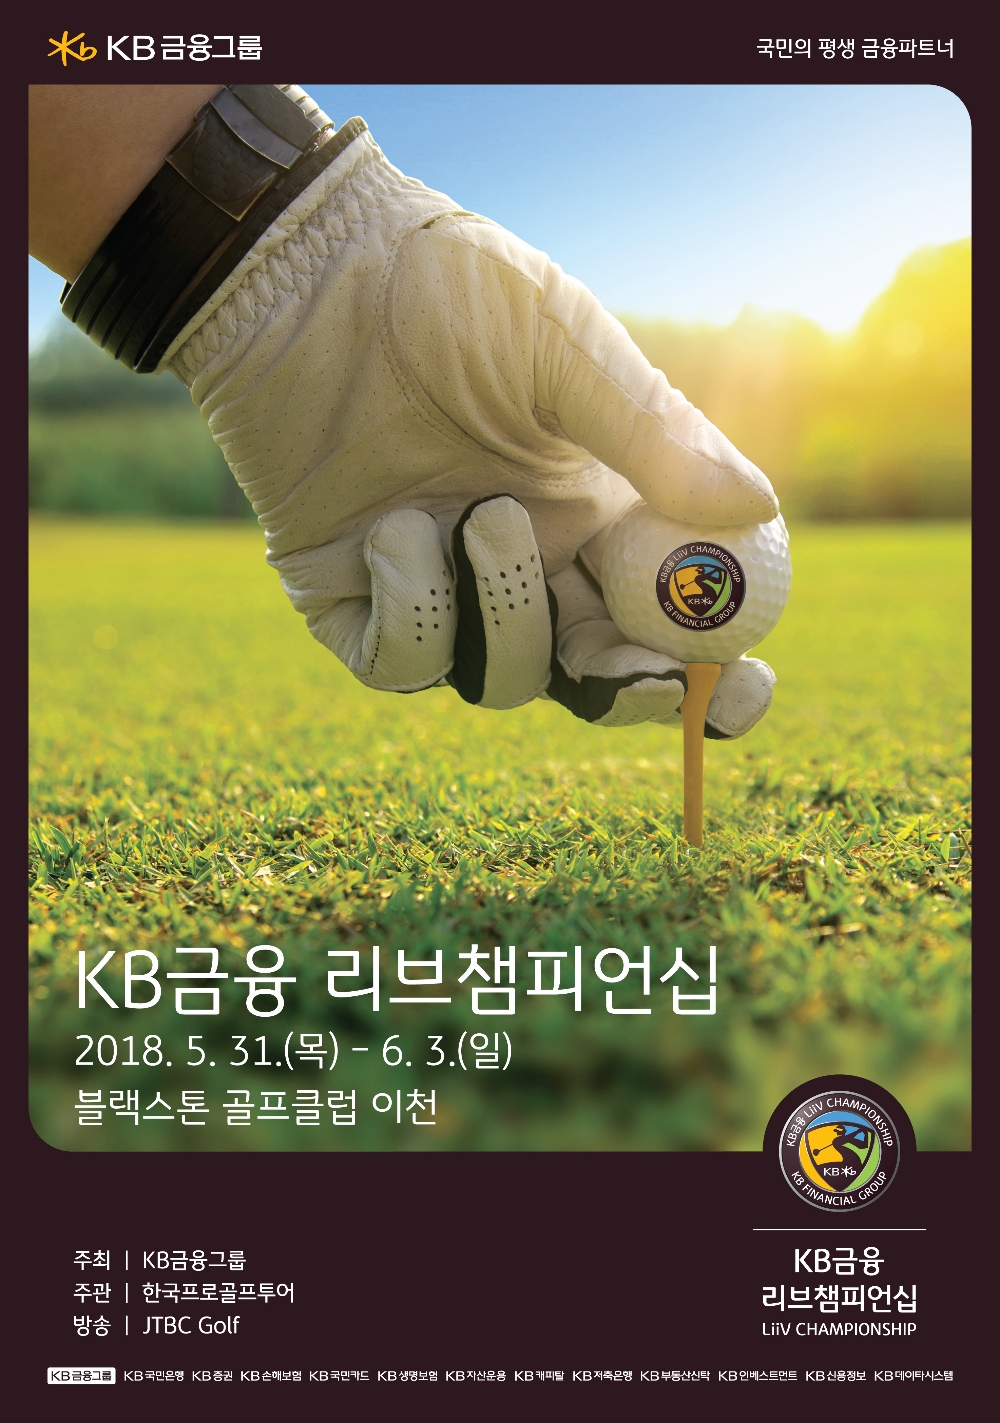 KB금융 ‘KB금융 리브챔피언십’ 개최